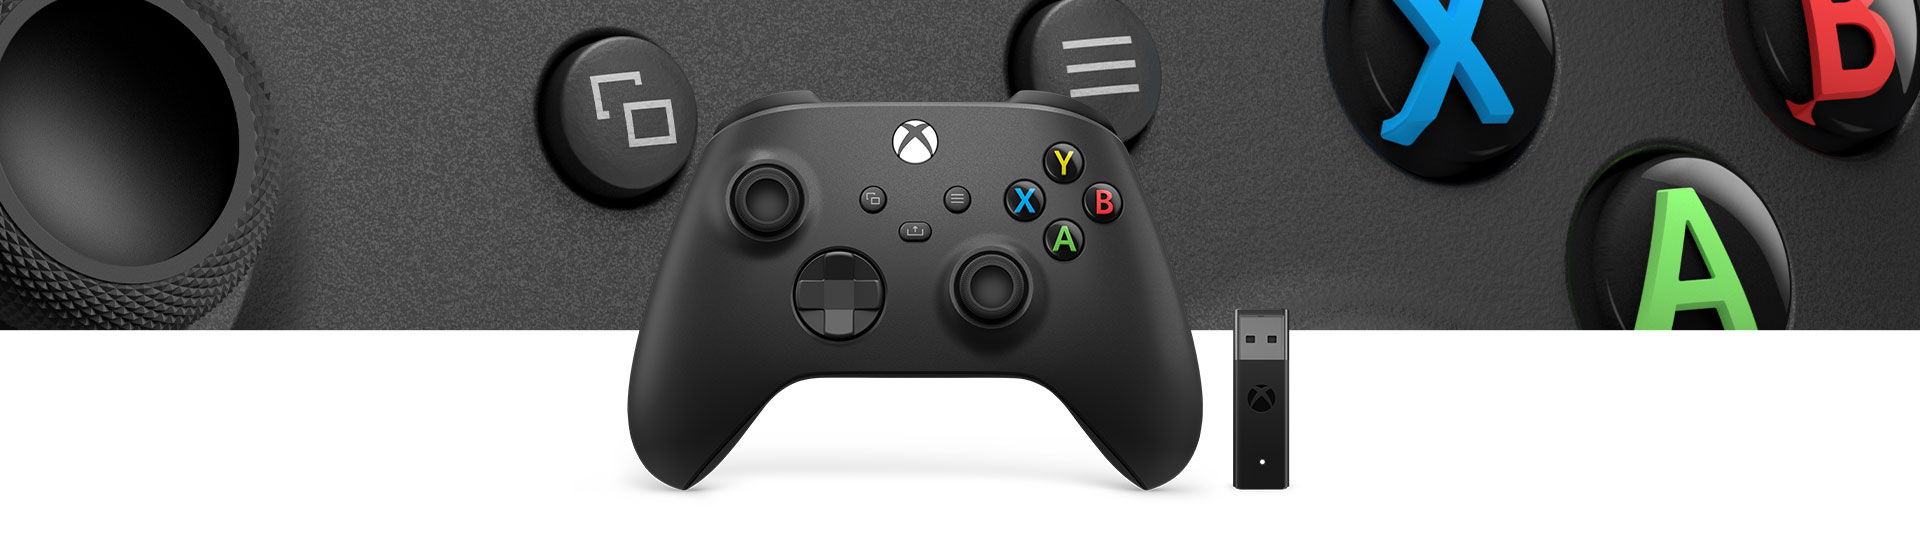 Vezeték nélküli Xbox kontroller + vezeték nélküli adapter Windows 10 rendszerhez a kontroller felületi mintájának közeli képével